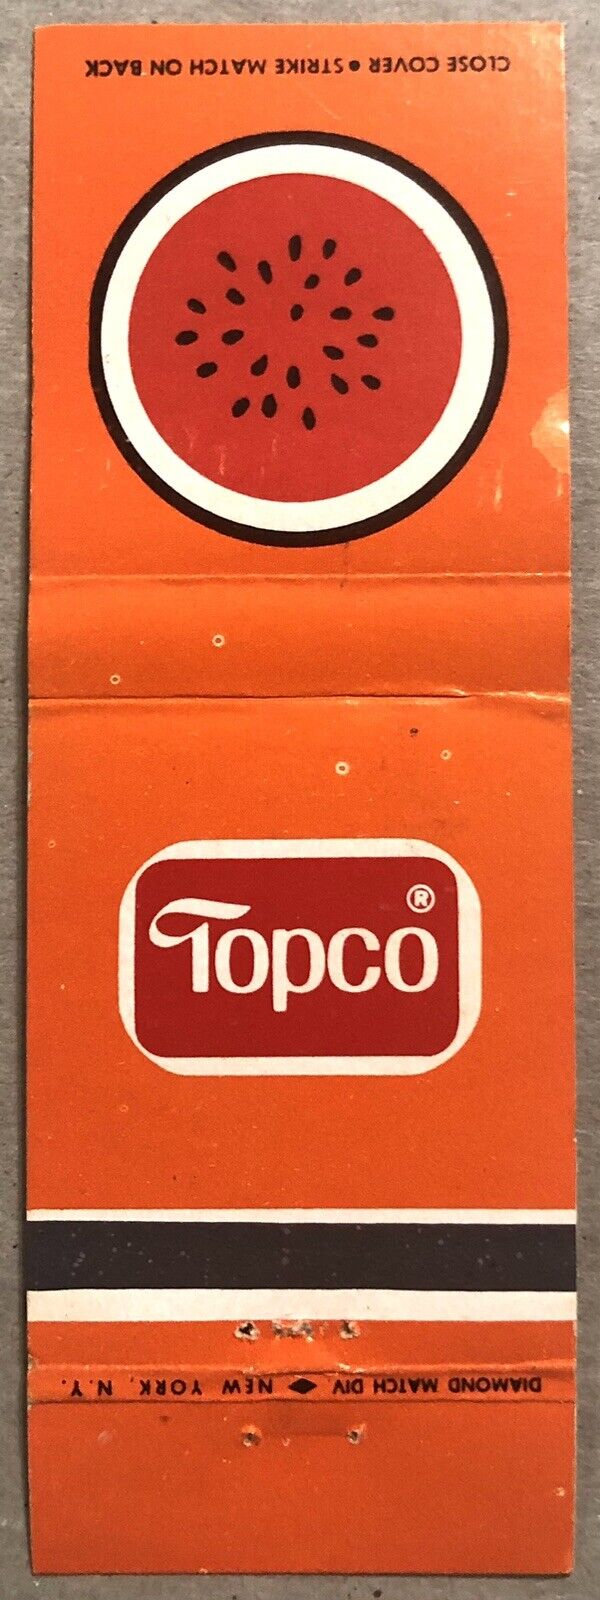 Vintage 20 Strike Matchbook Cover - Topco